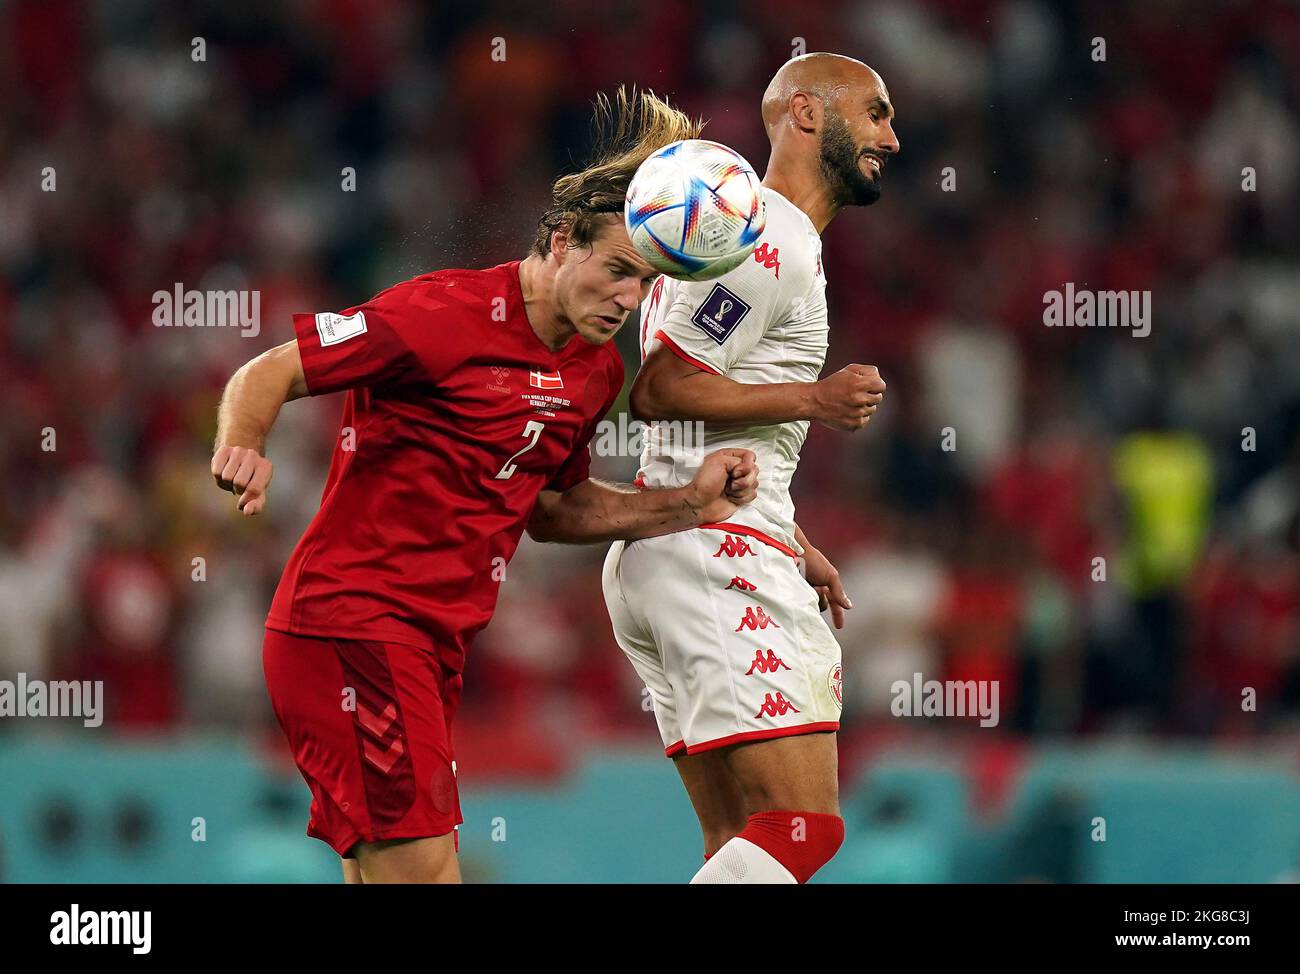 Joachim Andersen in Danimarca e Issam Jebali in Tunisia (a destra) combattono per la palla durante la partita di Coppa del mondo FIFA Group D allo stadio Education City, al Rayyan, Qatar. Data immagine: Martedì 22 novembre 2022. Foto Stock